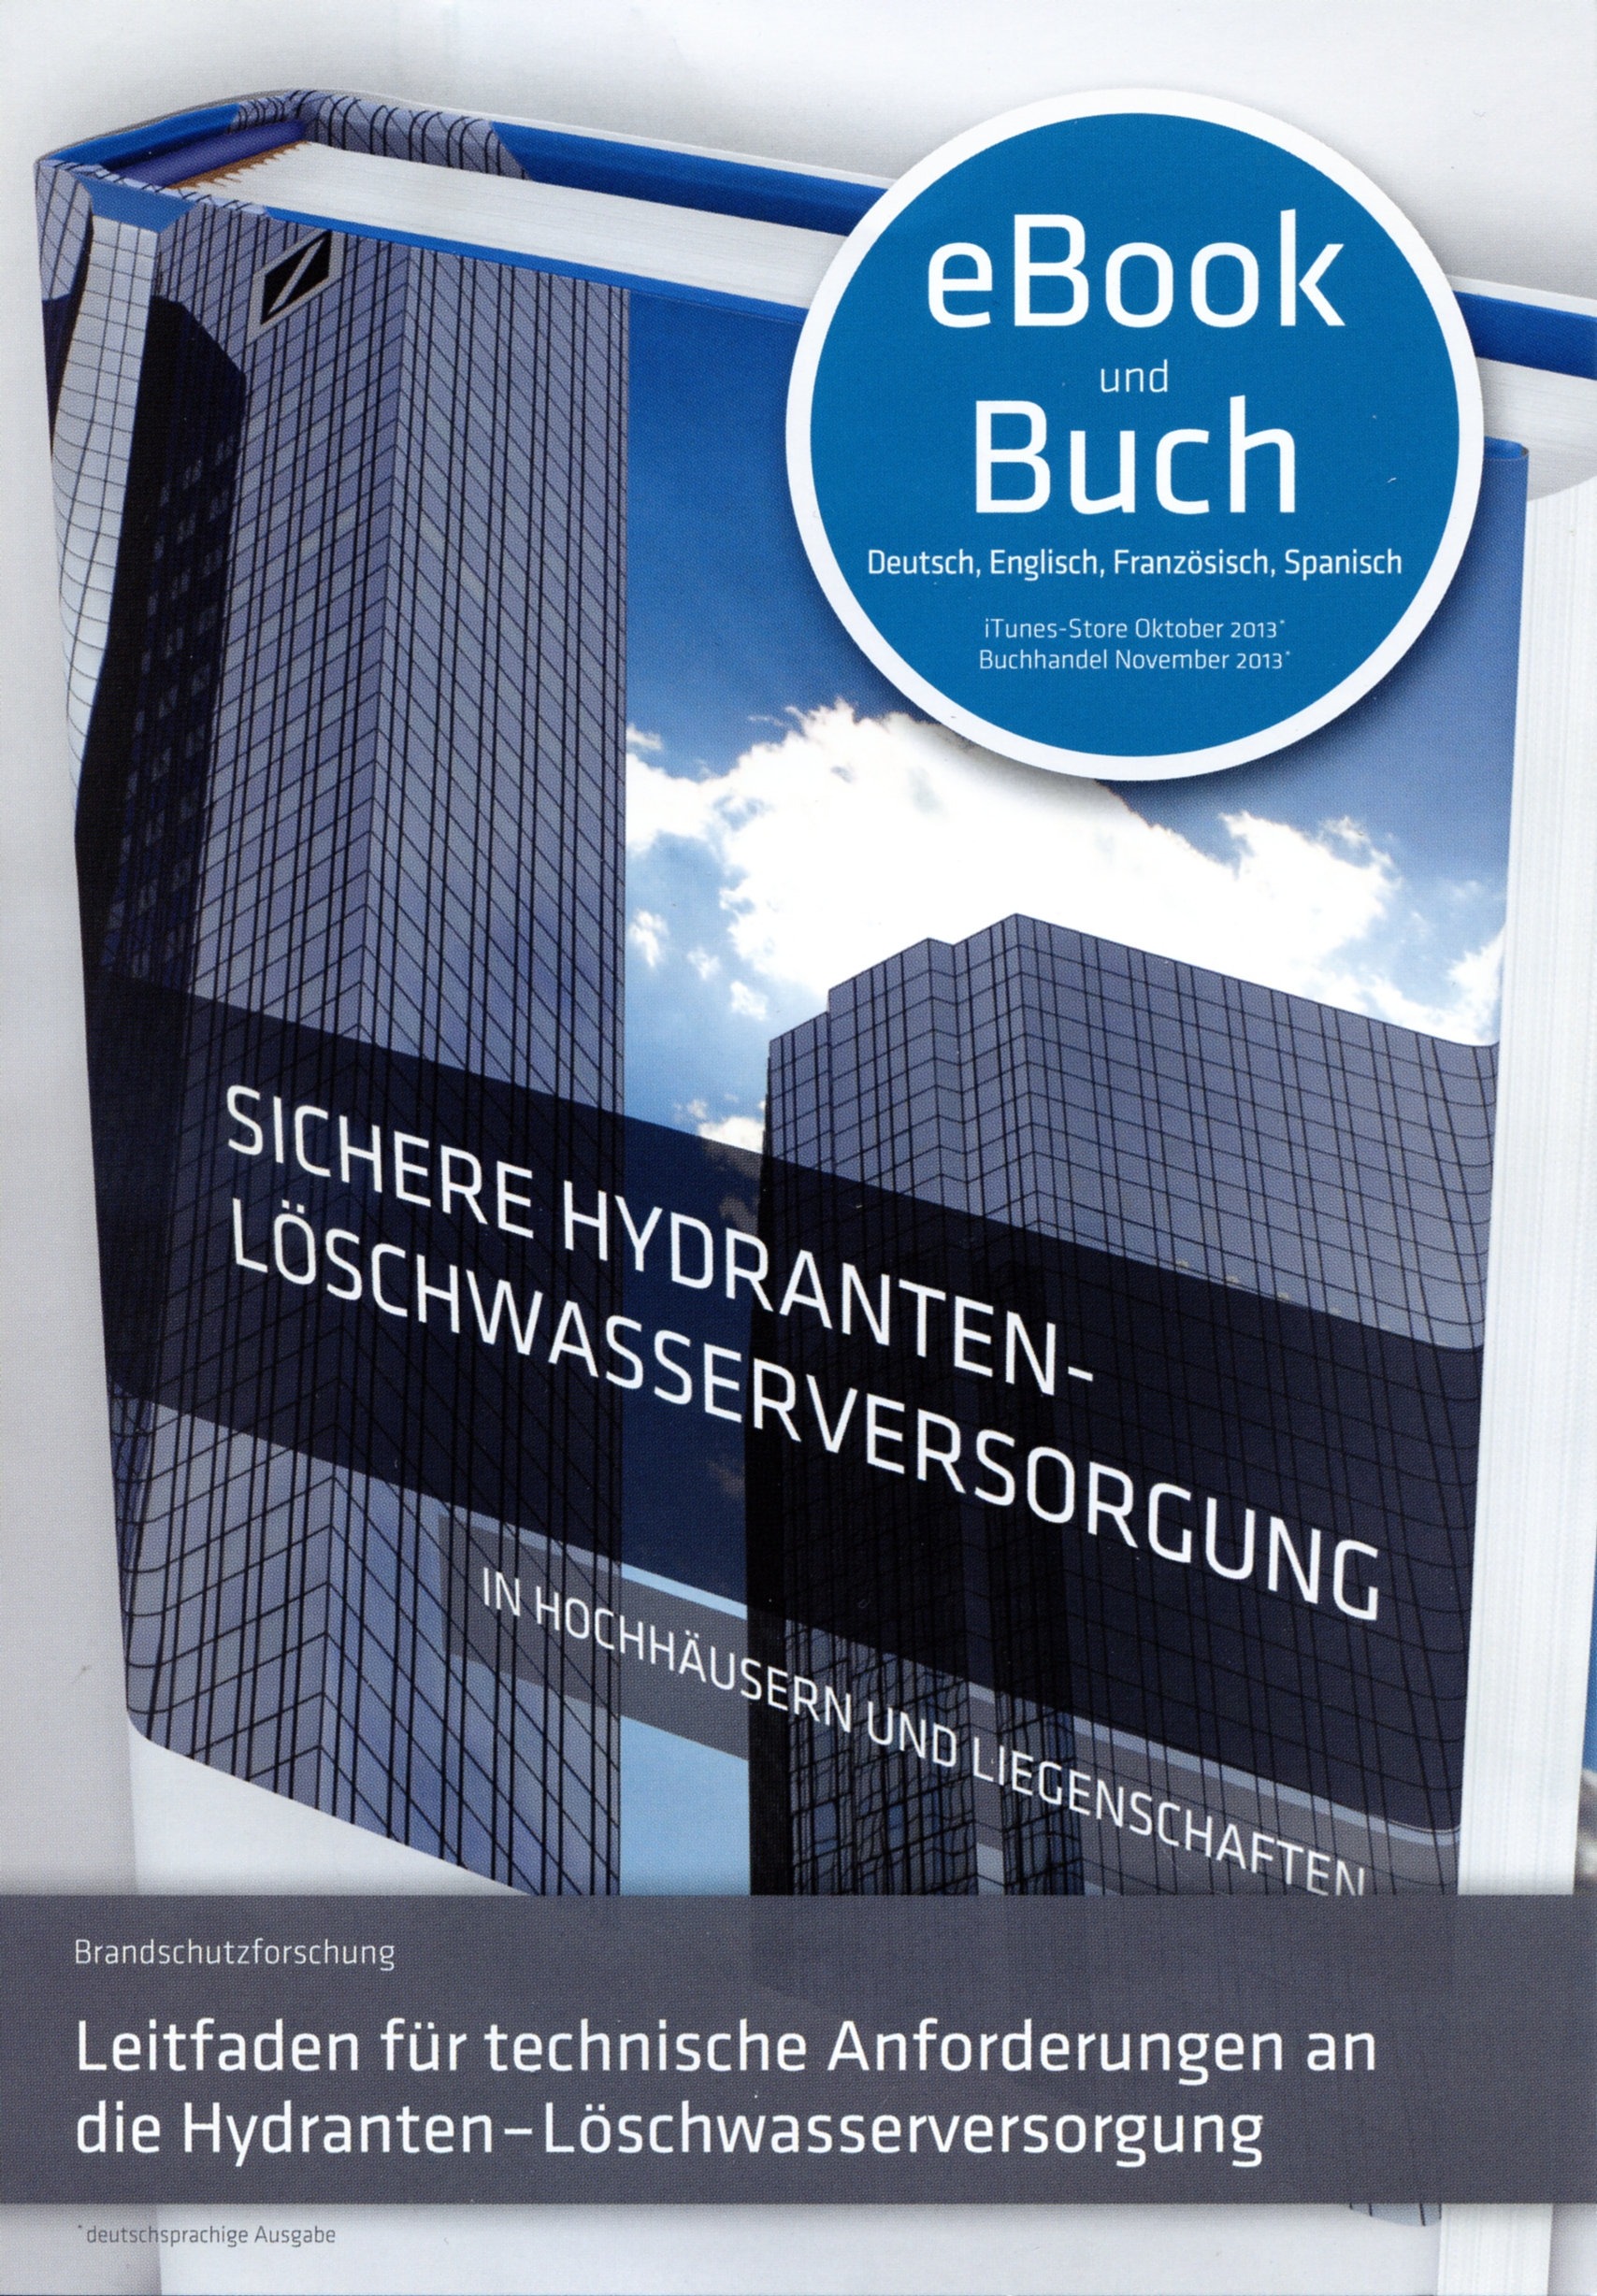 Buchcover: Sichere Hydranten-Lschwasserversorgung in Hochhusern und Liegenschaften